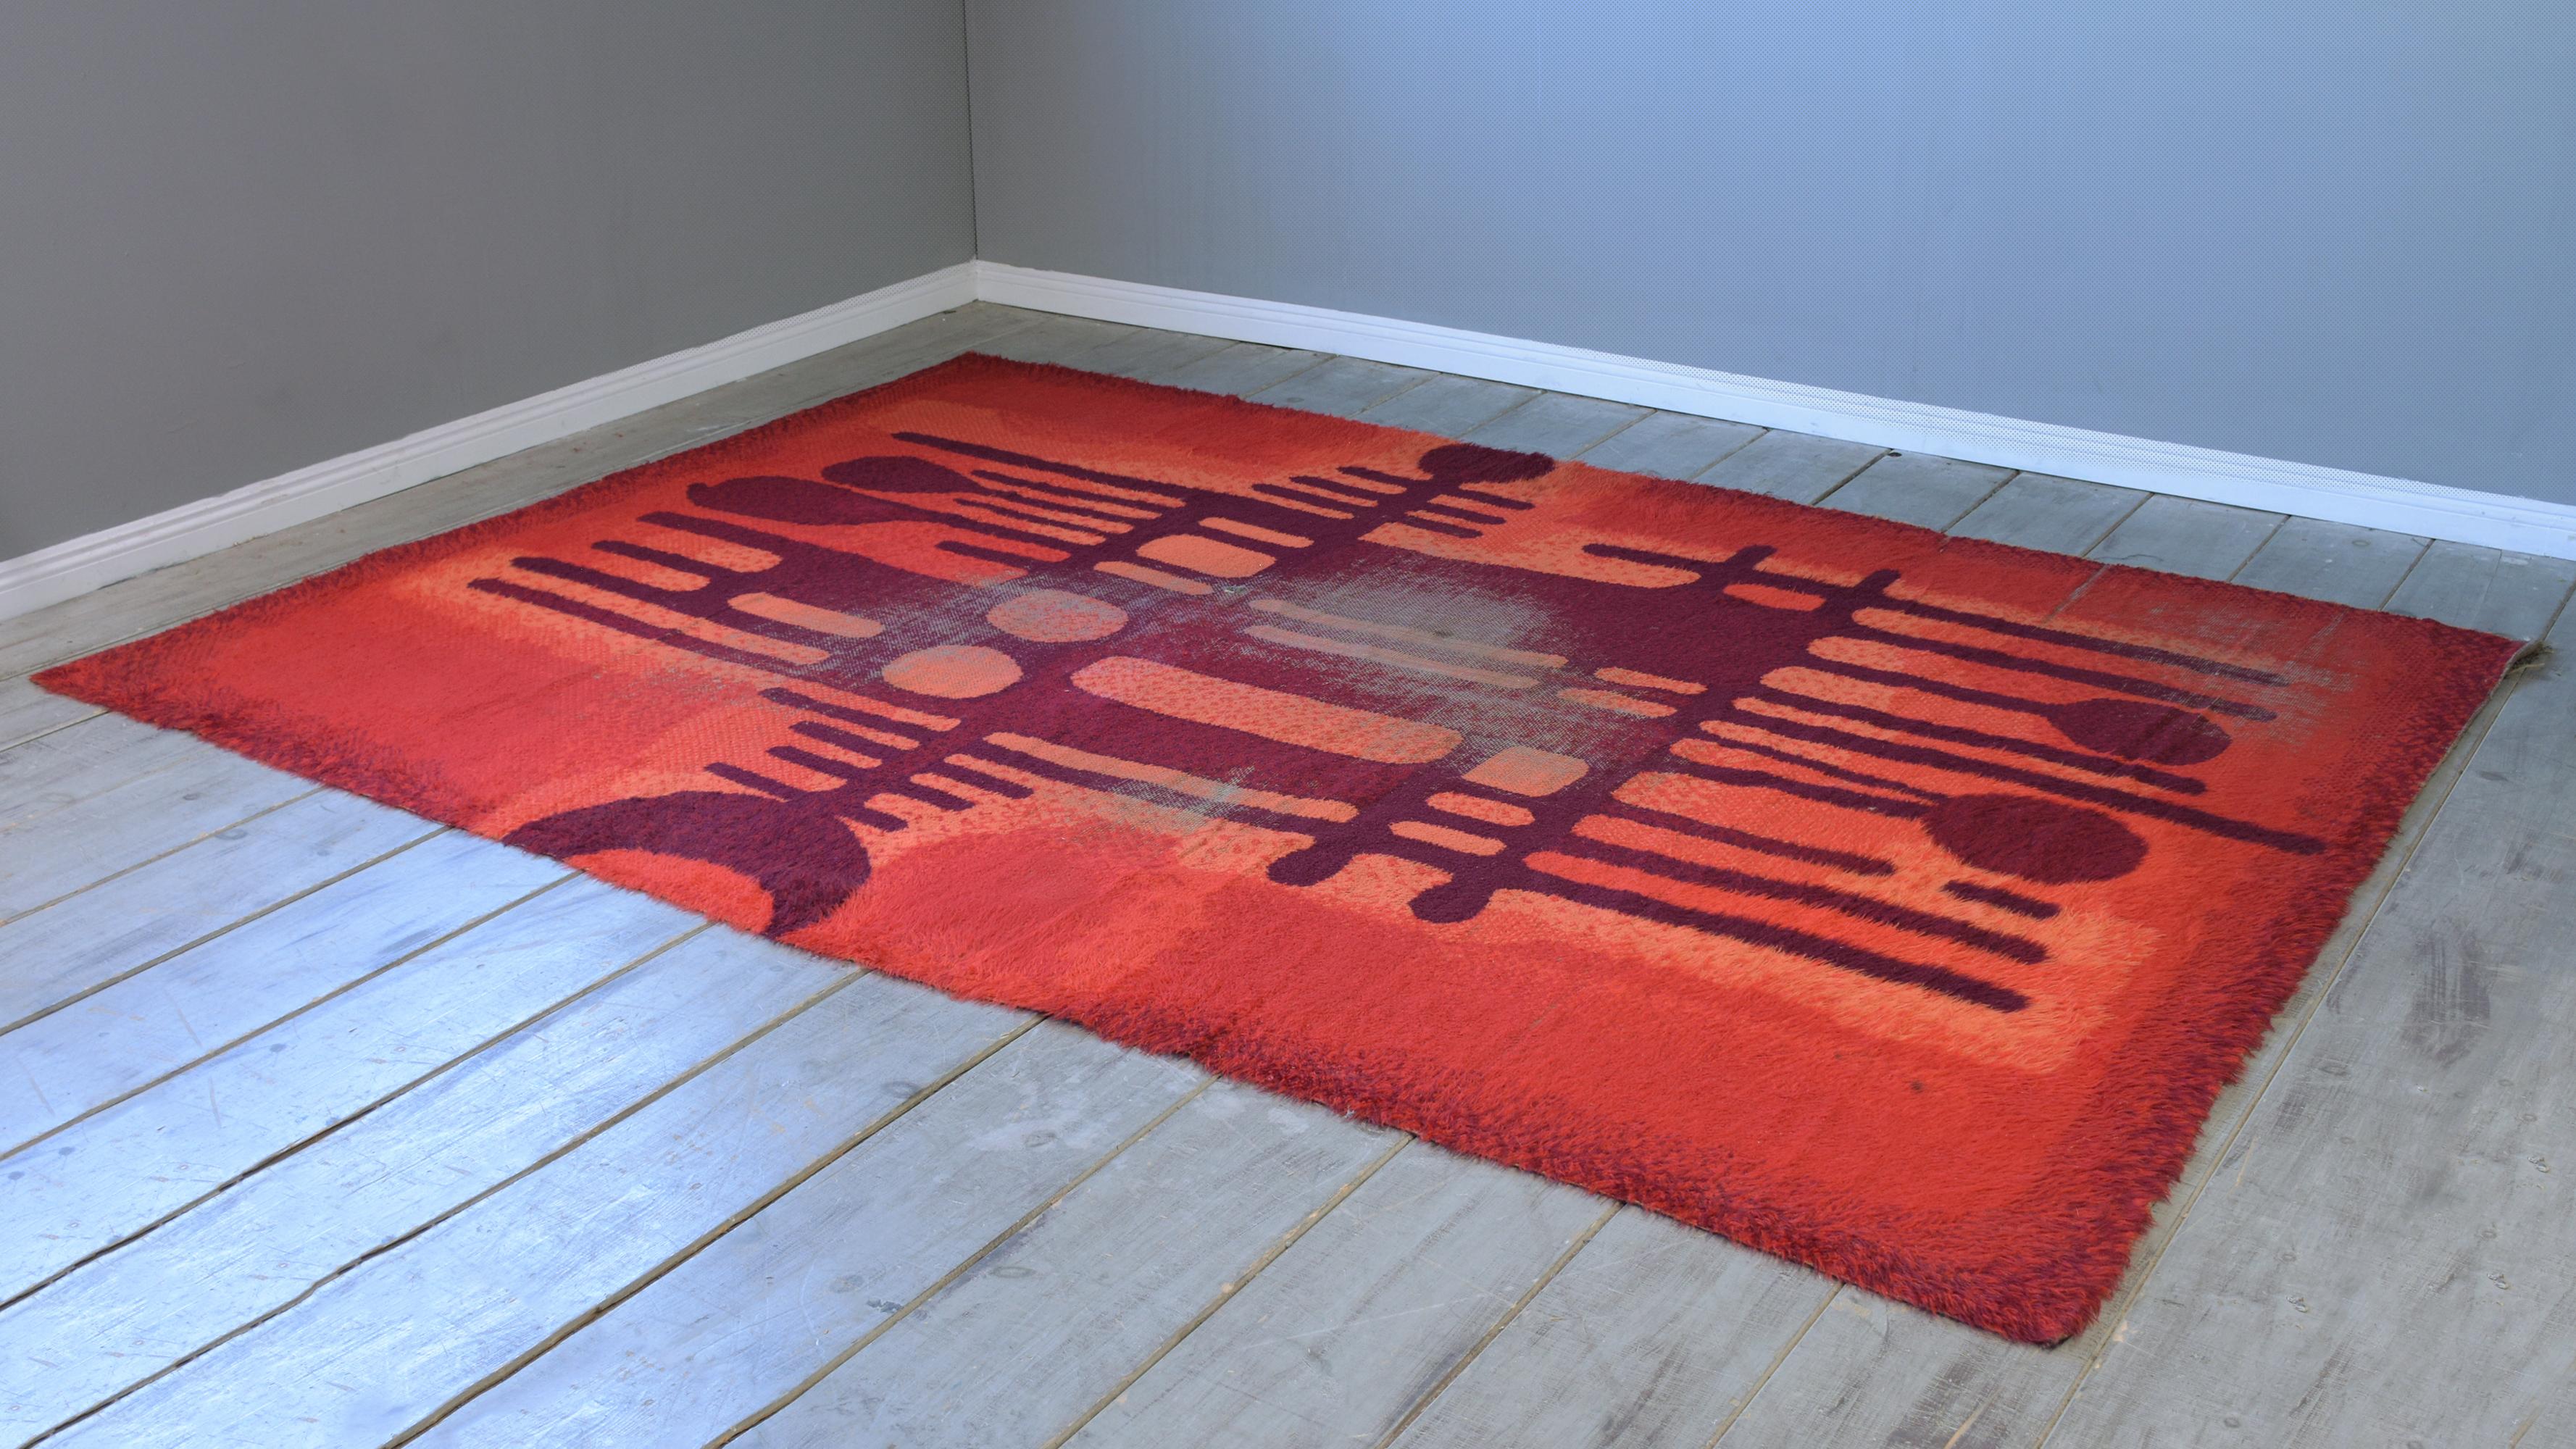 Ce vibrant tapis scandinave à motif de feu d'Ege Rya a un épais poil de laine, avec des couleurs vibrantes en rouge, orange, rose et brun. Ce grand tapis vintage est sûr d'ajouter un peu de couleur bienvenue à tout décor sophistiqué inspiré pour les